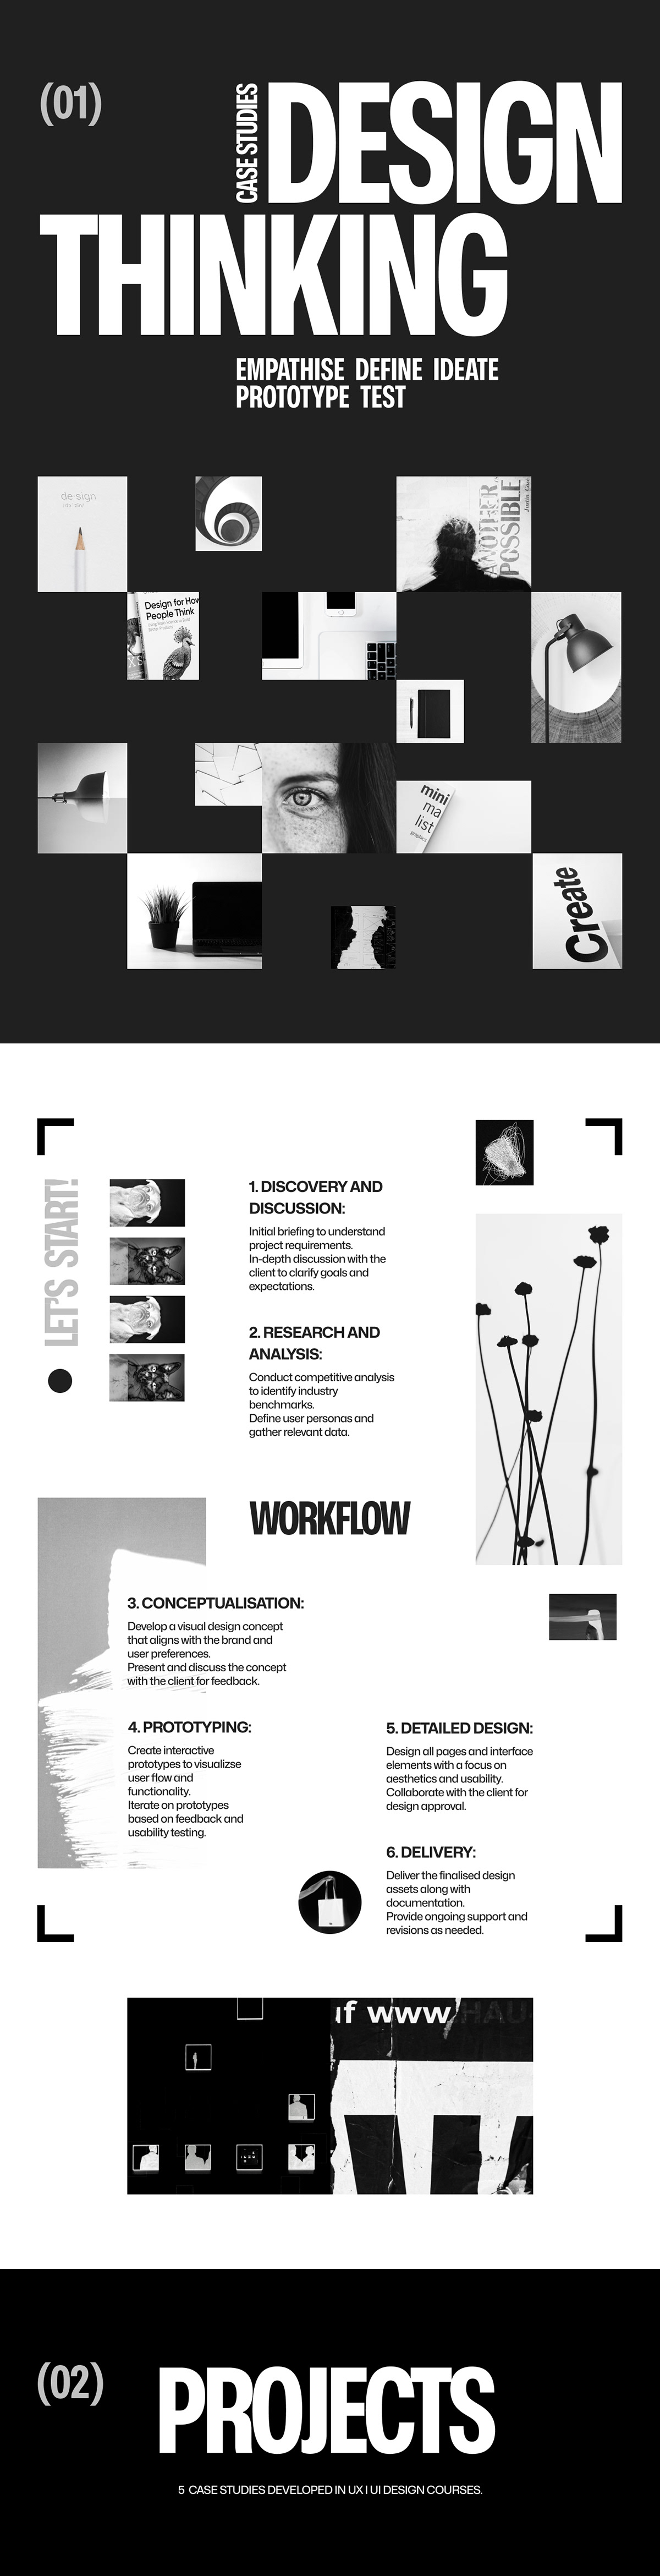 UX design portfolio darkmode minimalist ui design portfolio website personal website animation  ux/ui Figma